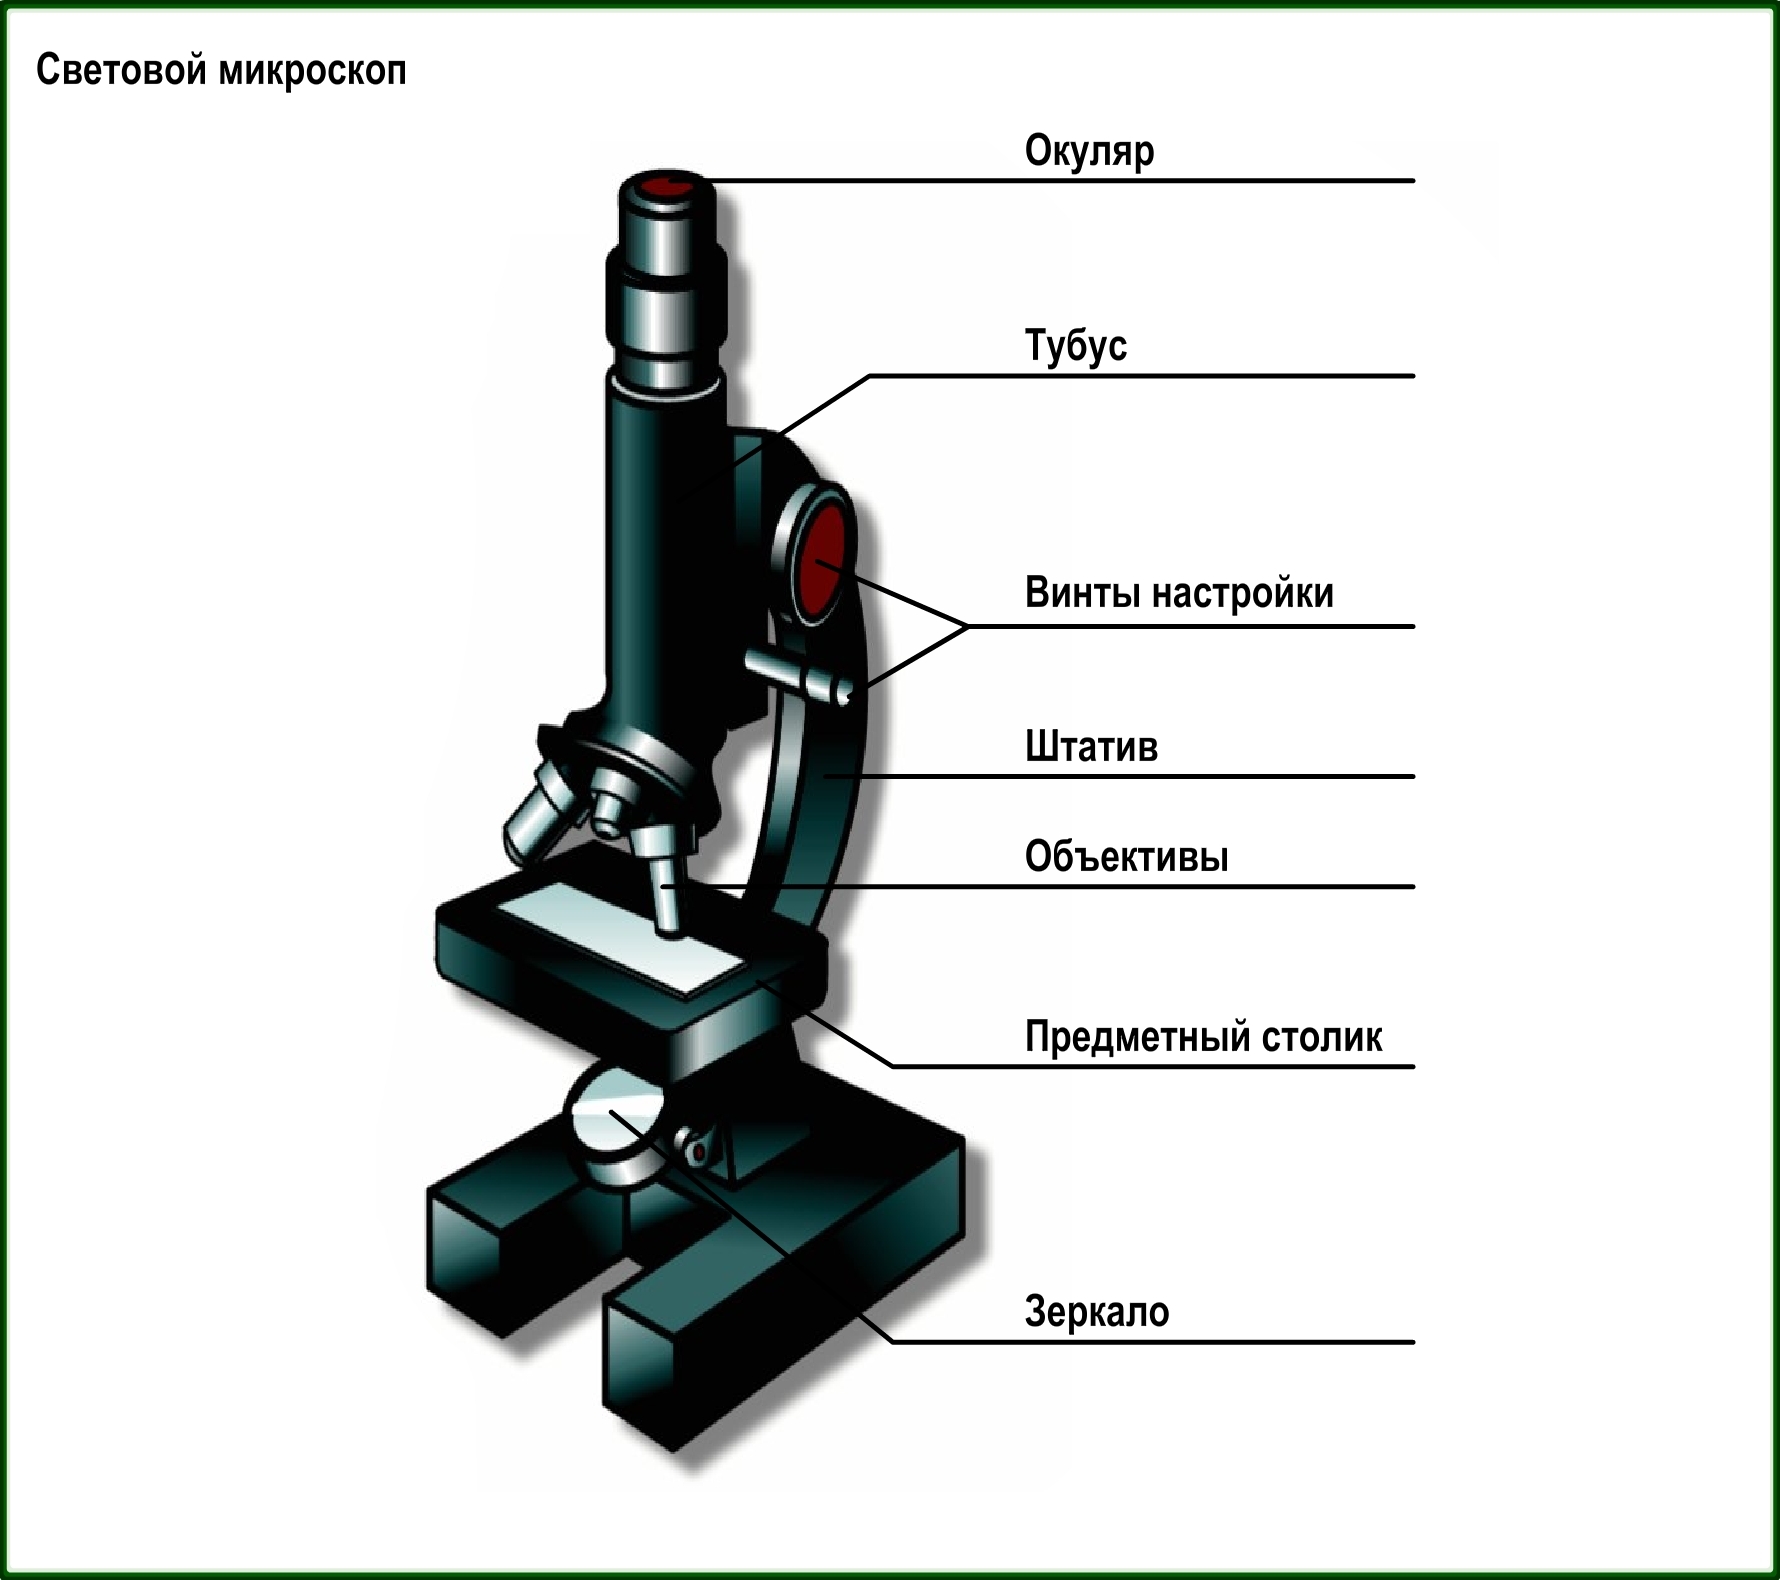 Строение цифрового микроскопа 5. Цифровой микроскоп строение 5 класс. Строение микроскопа 5 класс. Строение светового микроскопа 5 класс. Строение микроскопа с подписями и их функции